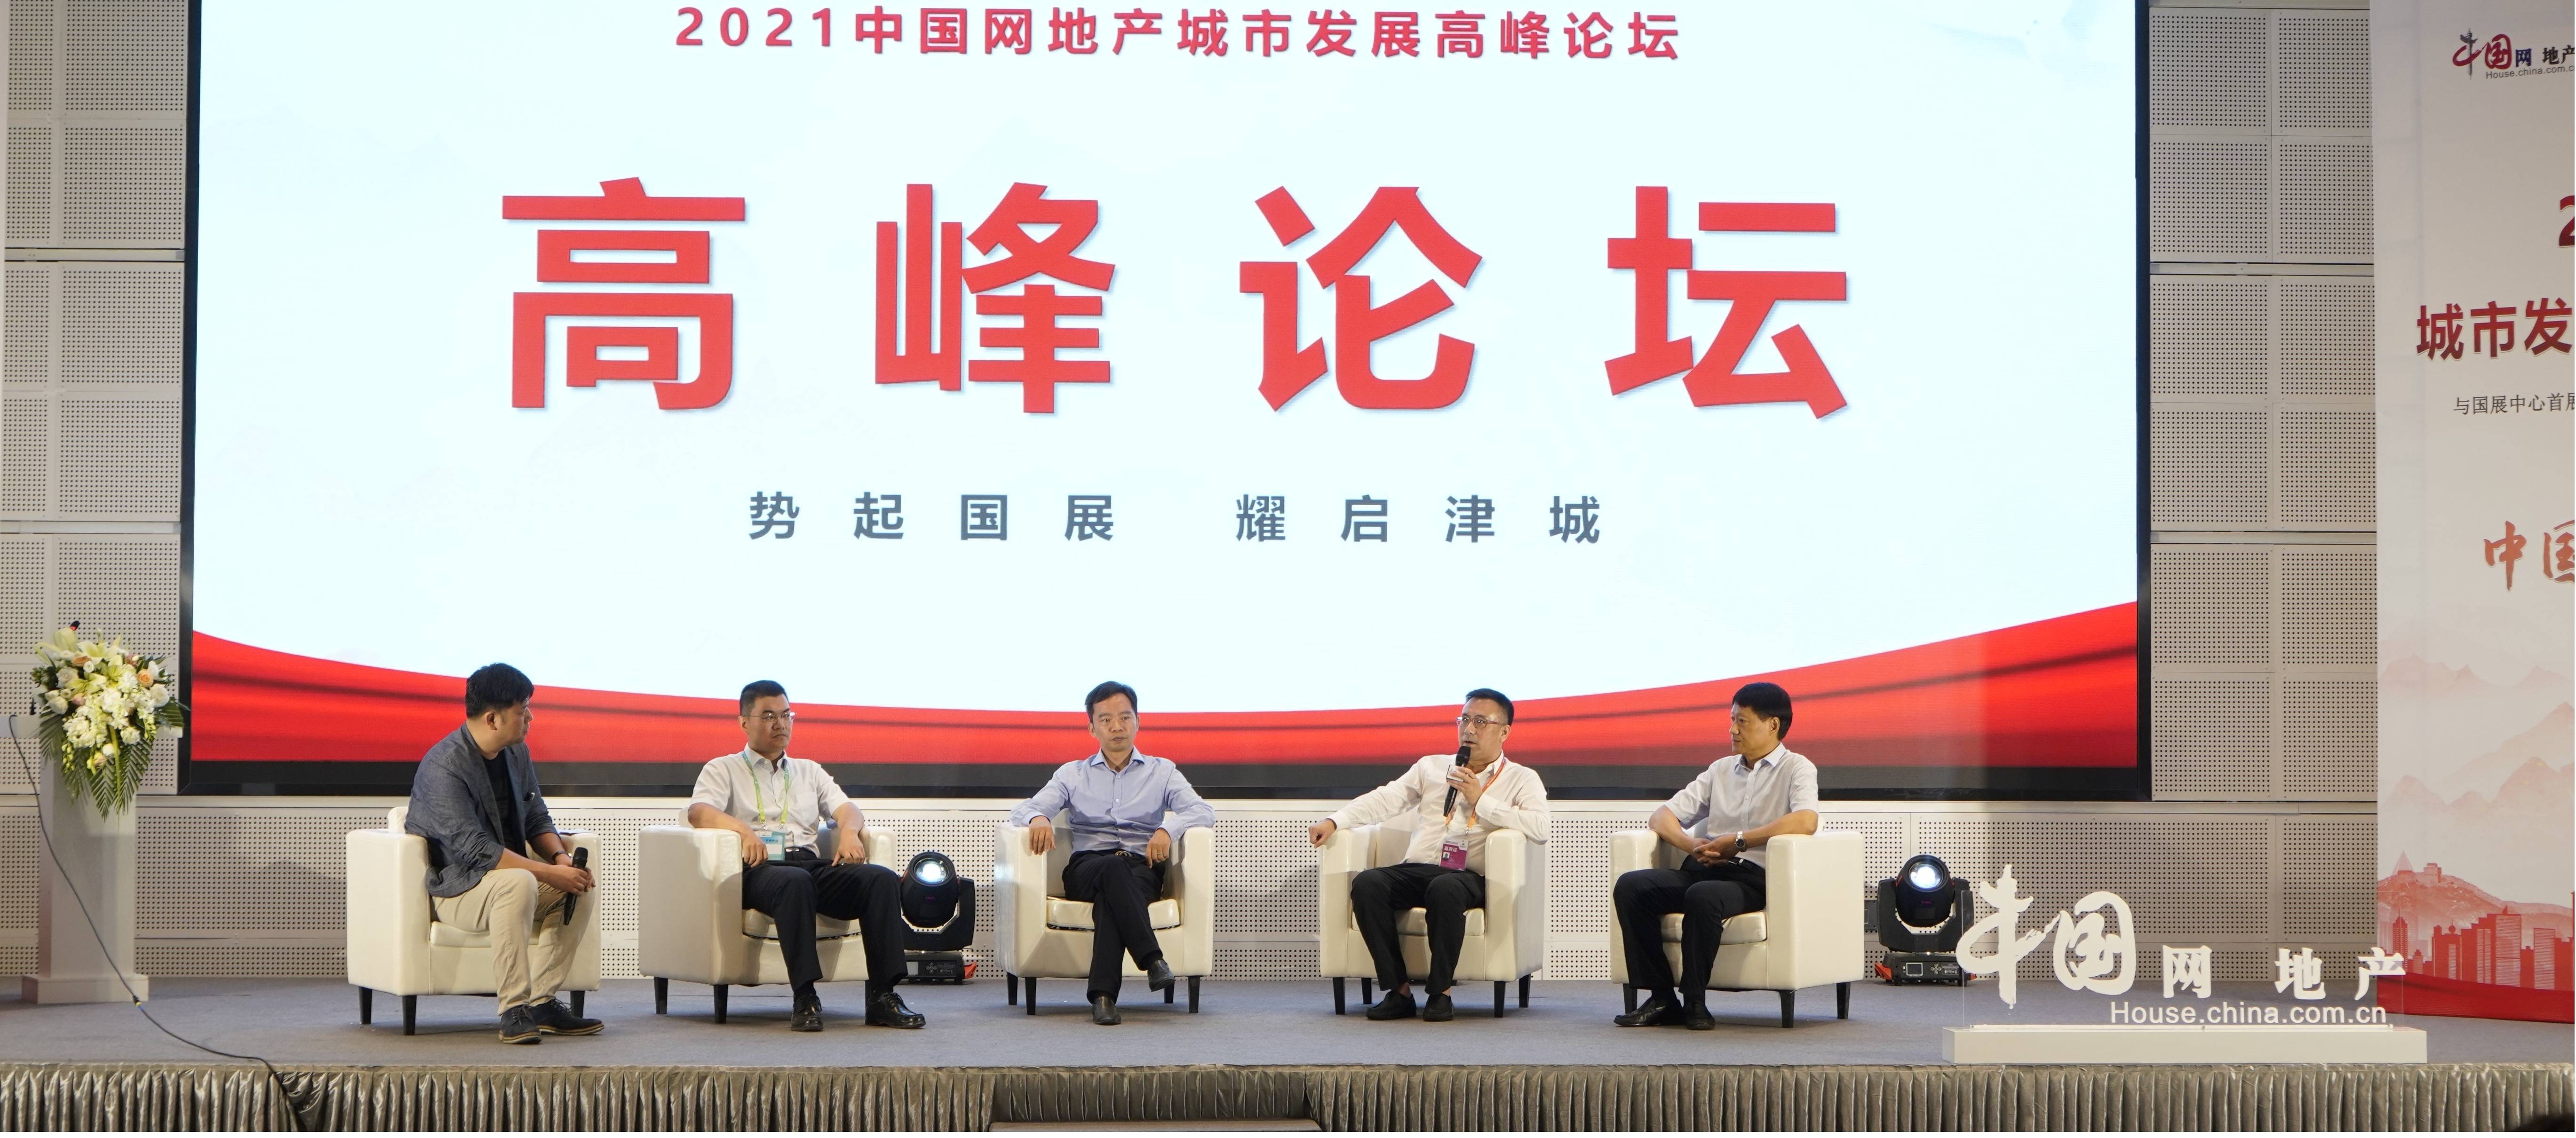 中国网地产“势起国展 耀启津城”2021城市发展高峰论坛圆满成功中国网地产